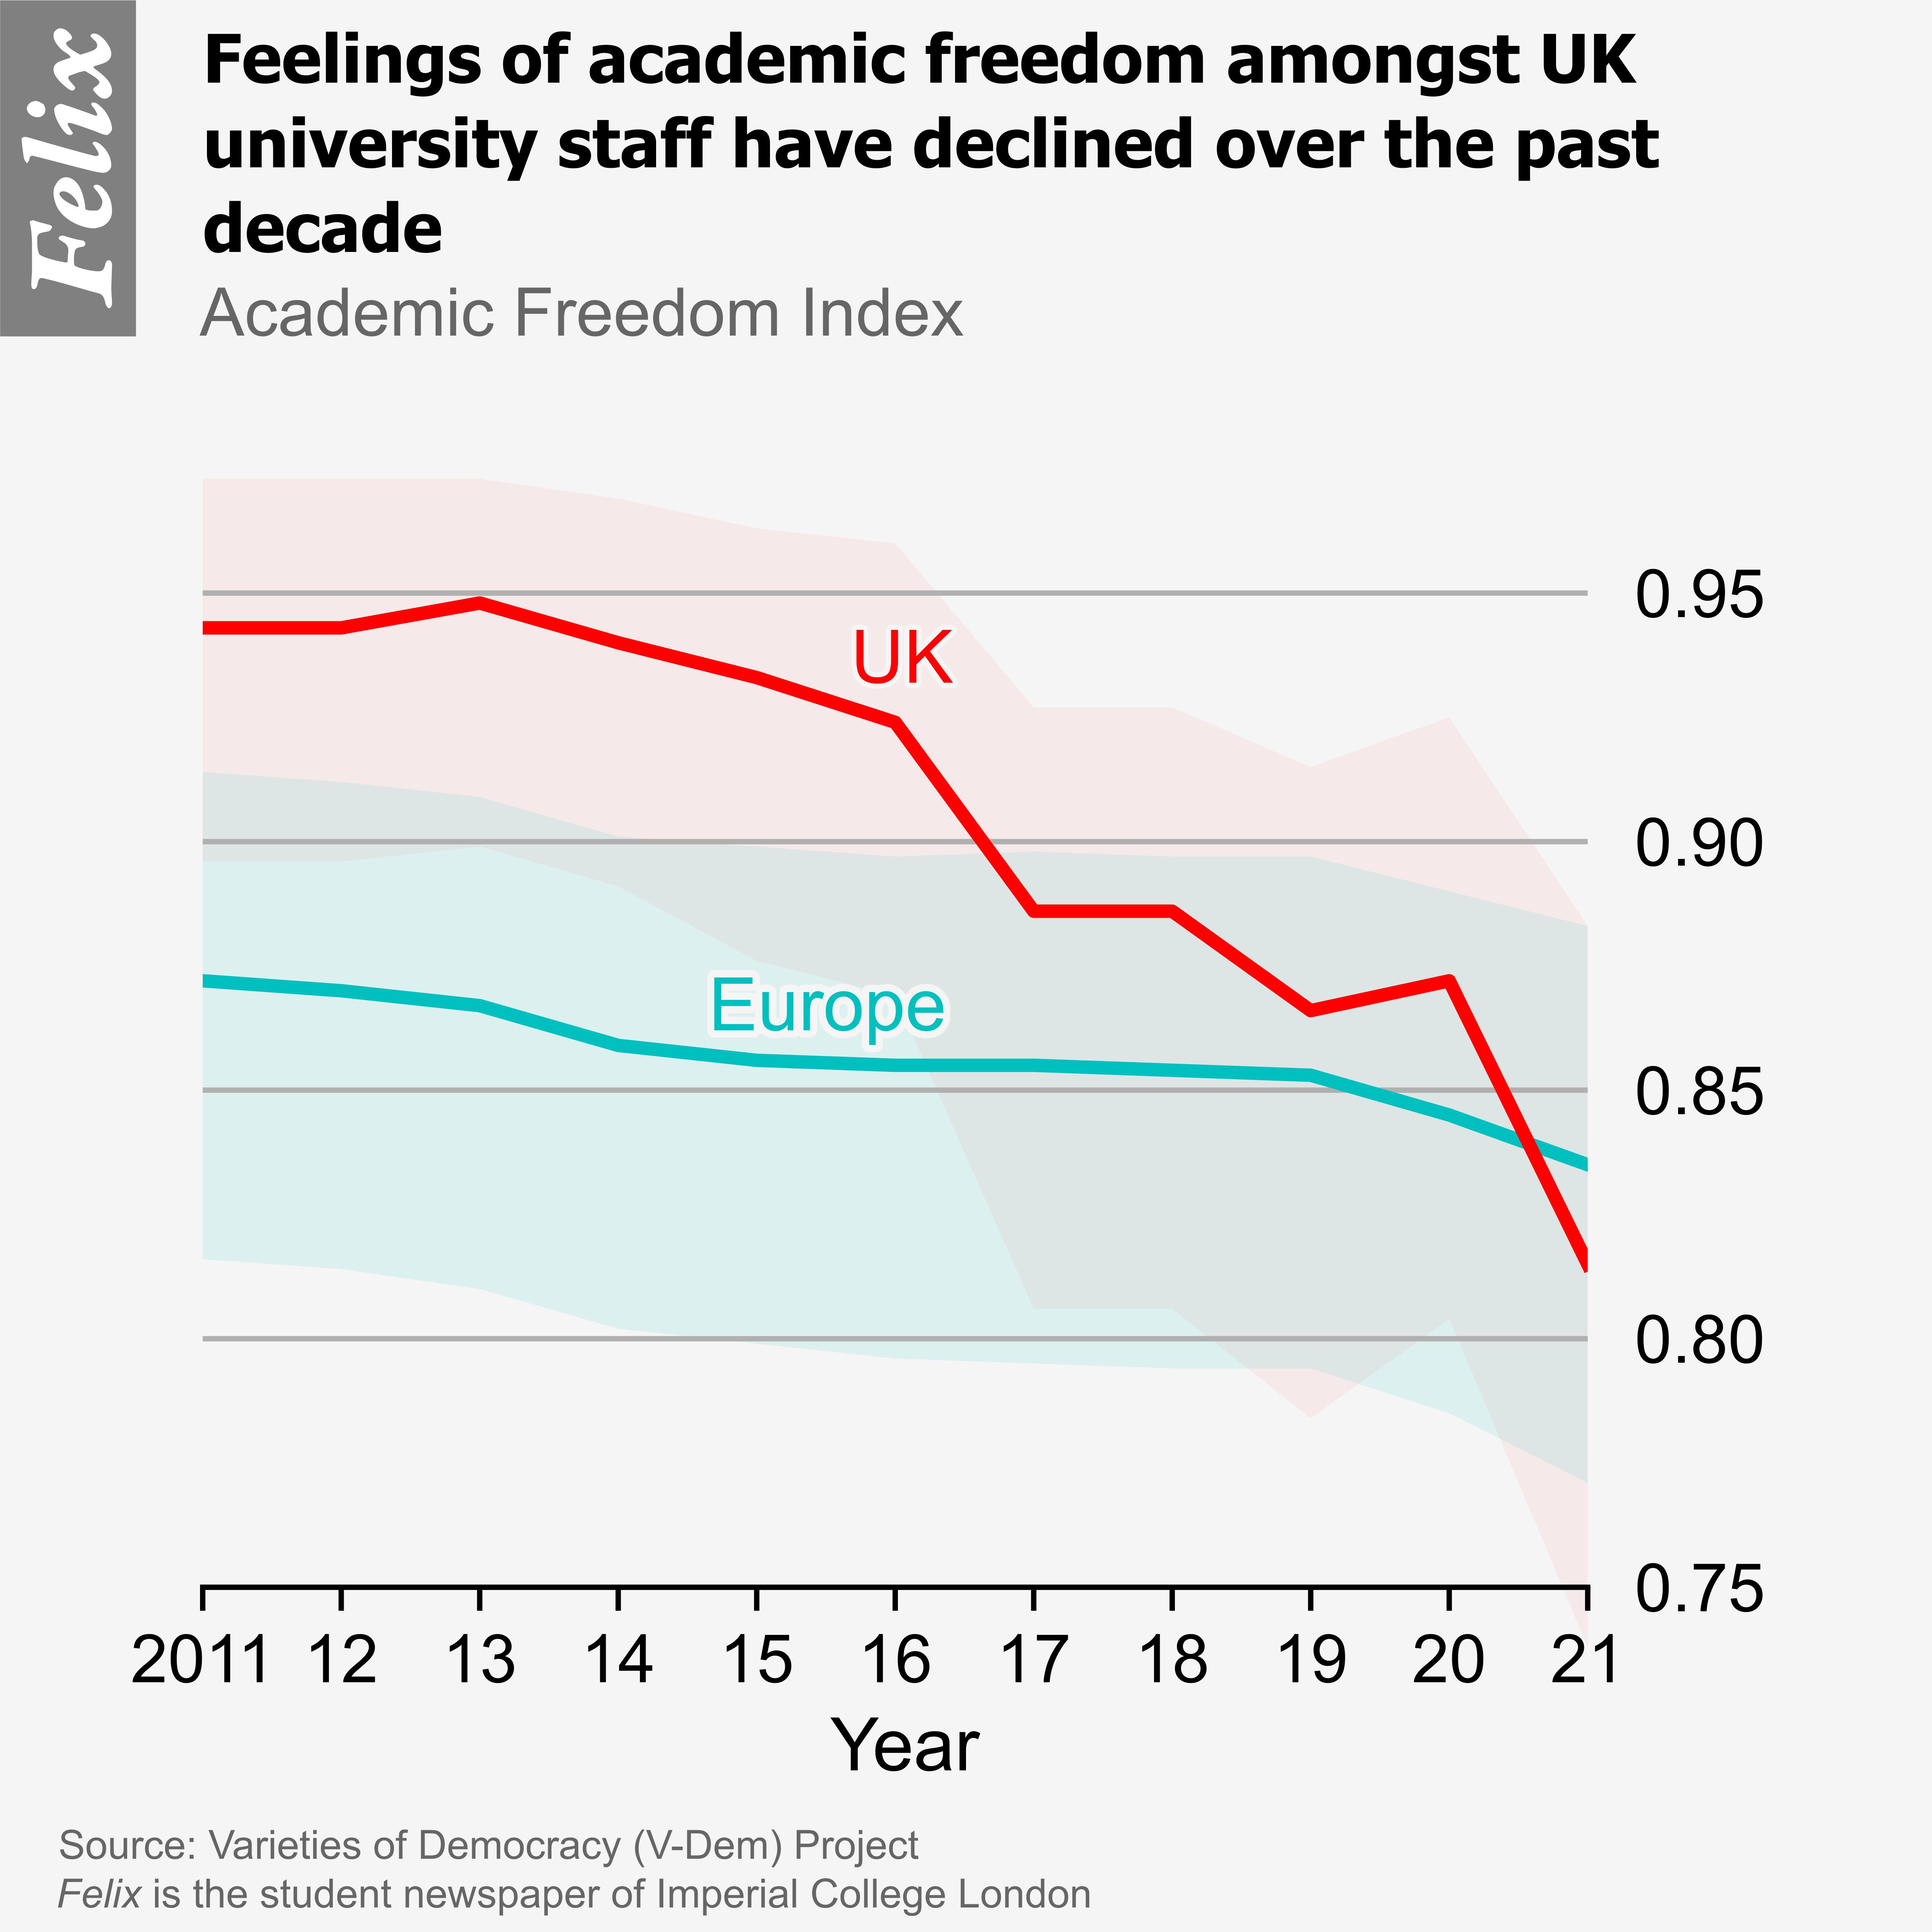 Academic Freedom Index, 2011-2021